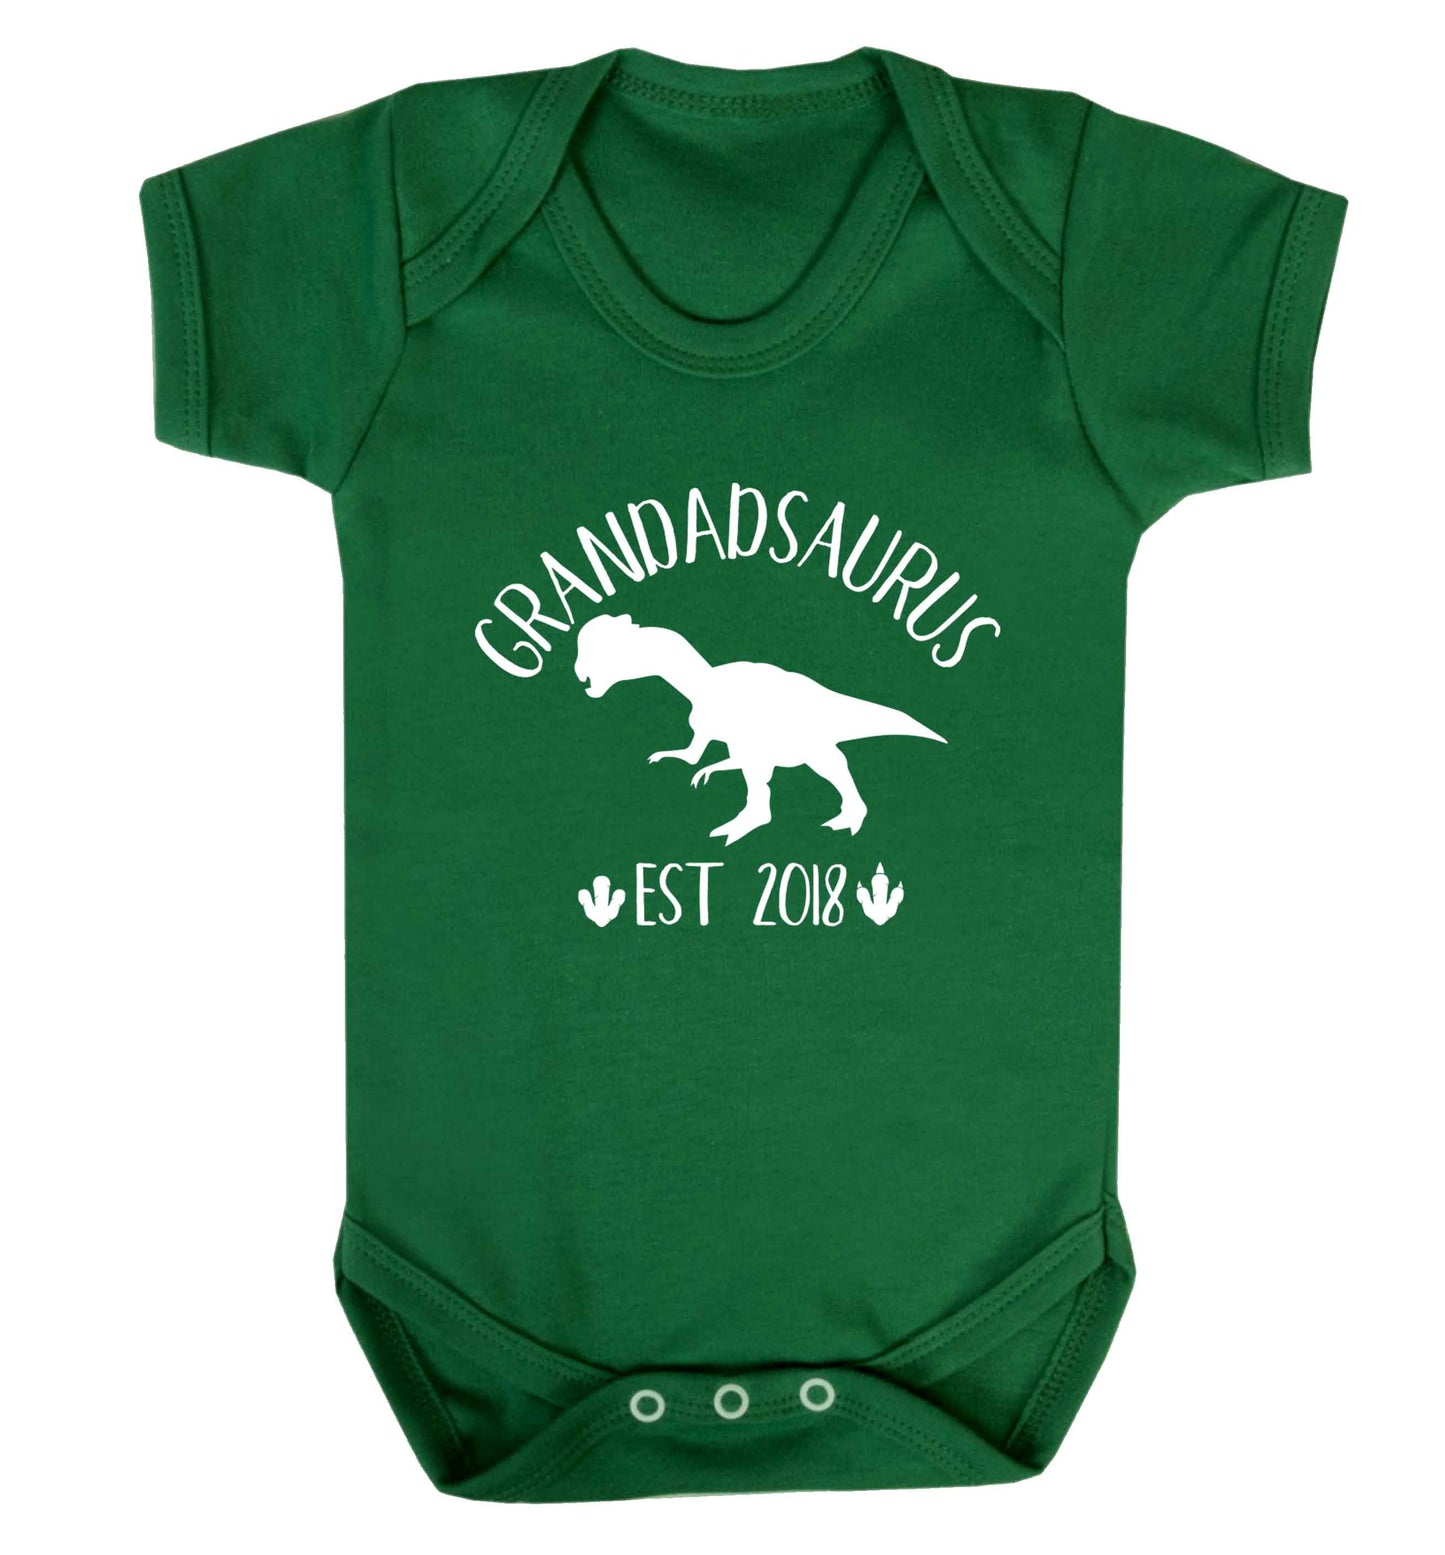 Personalised grandadsaurus since (custom date) Baby Vest green 18-24 months